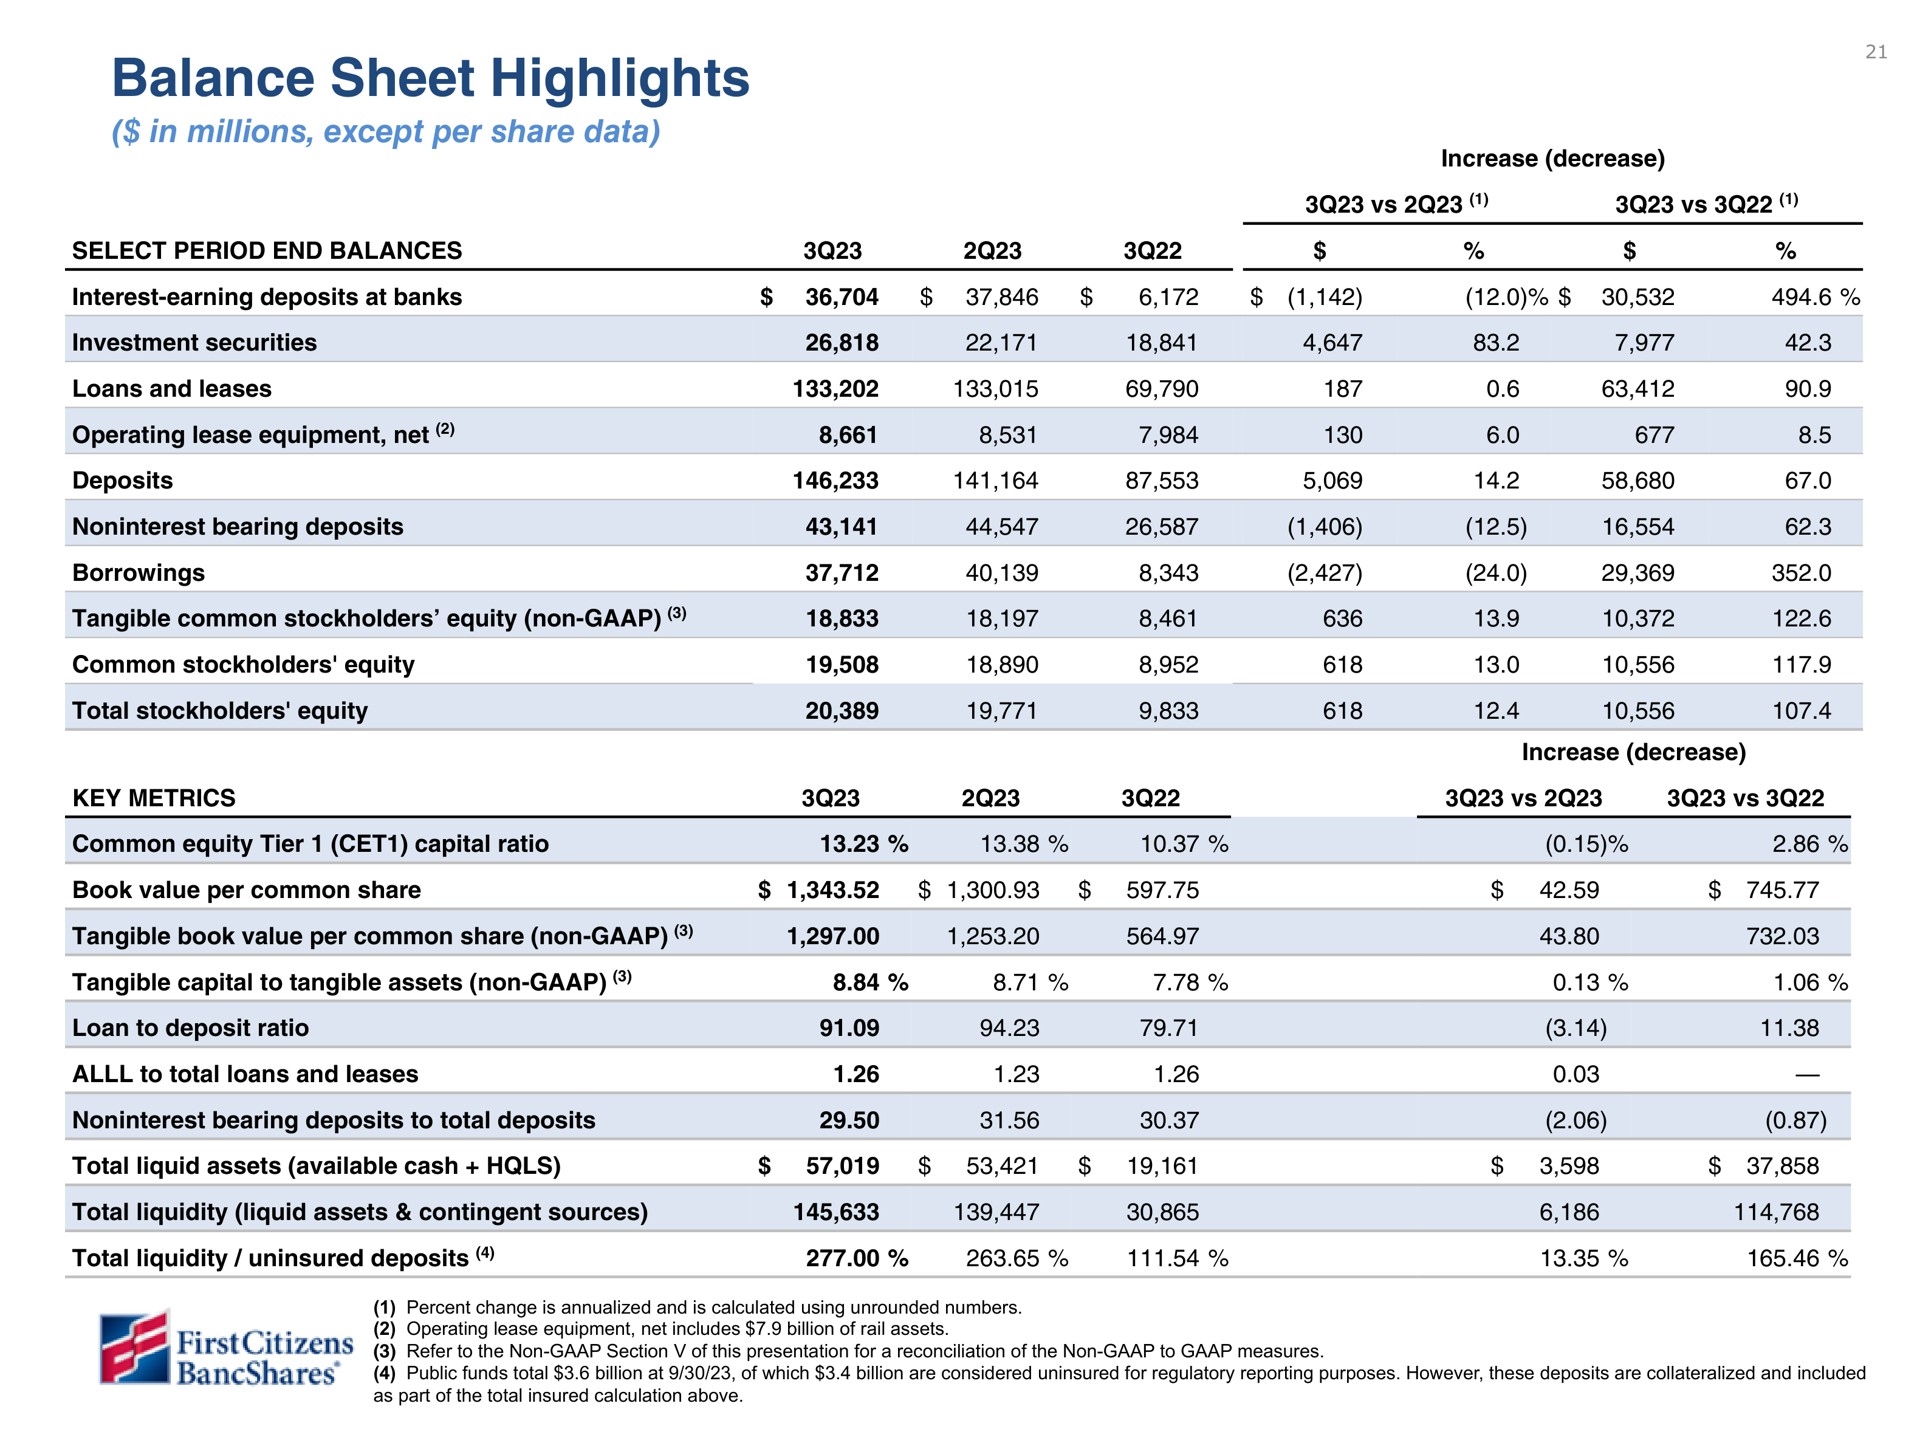 balance sheet highlights | First Citizens BancShares